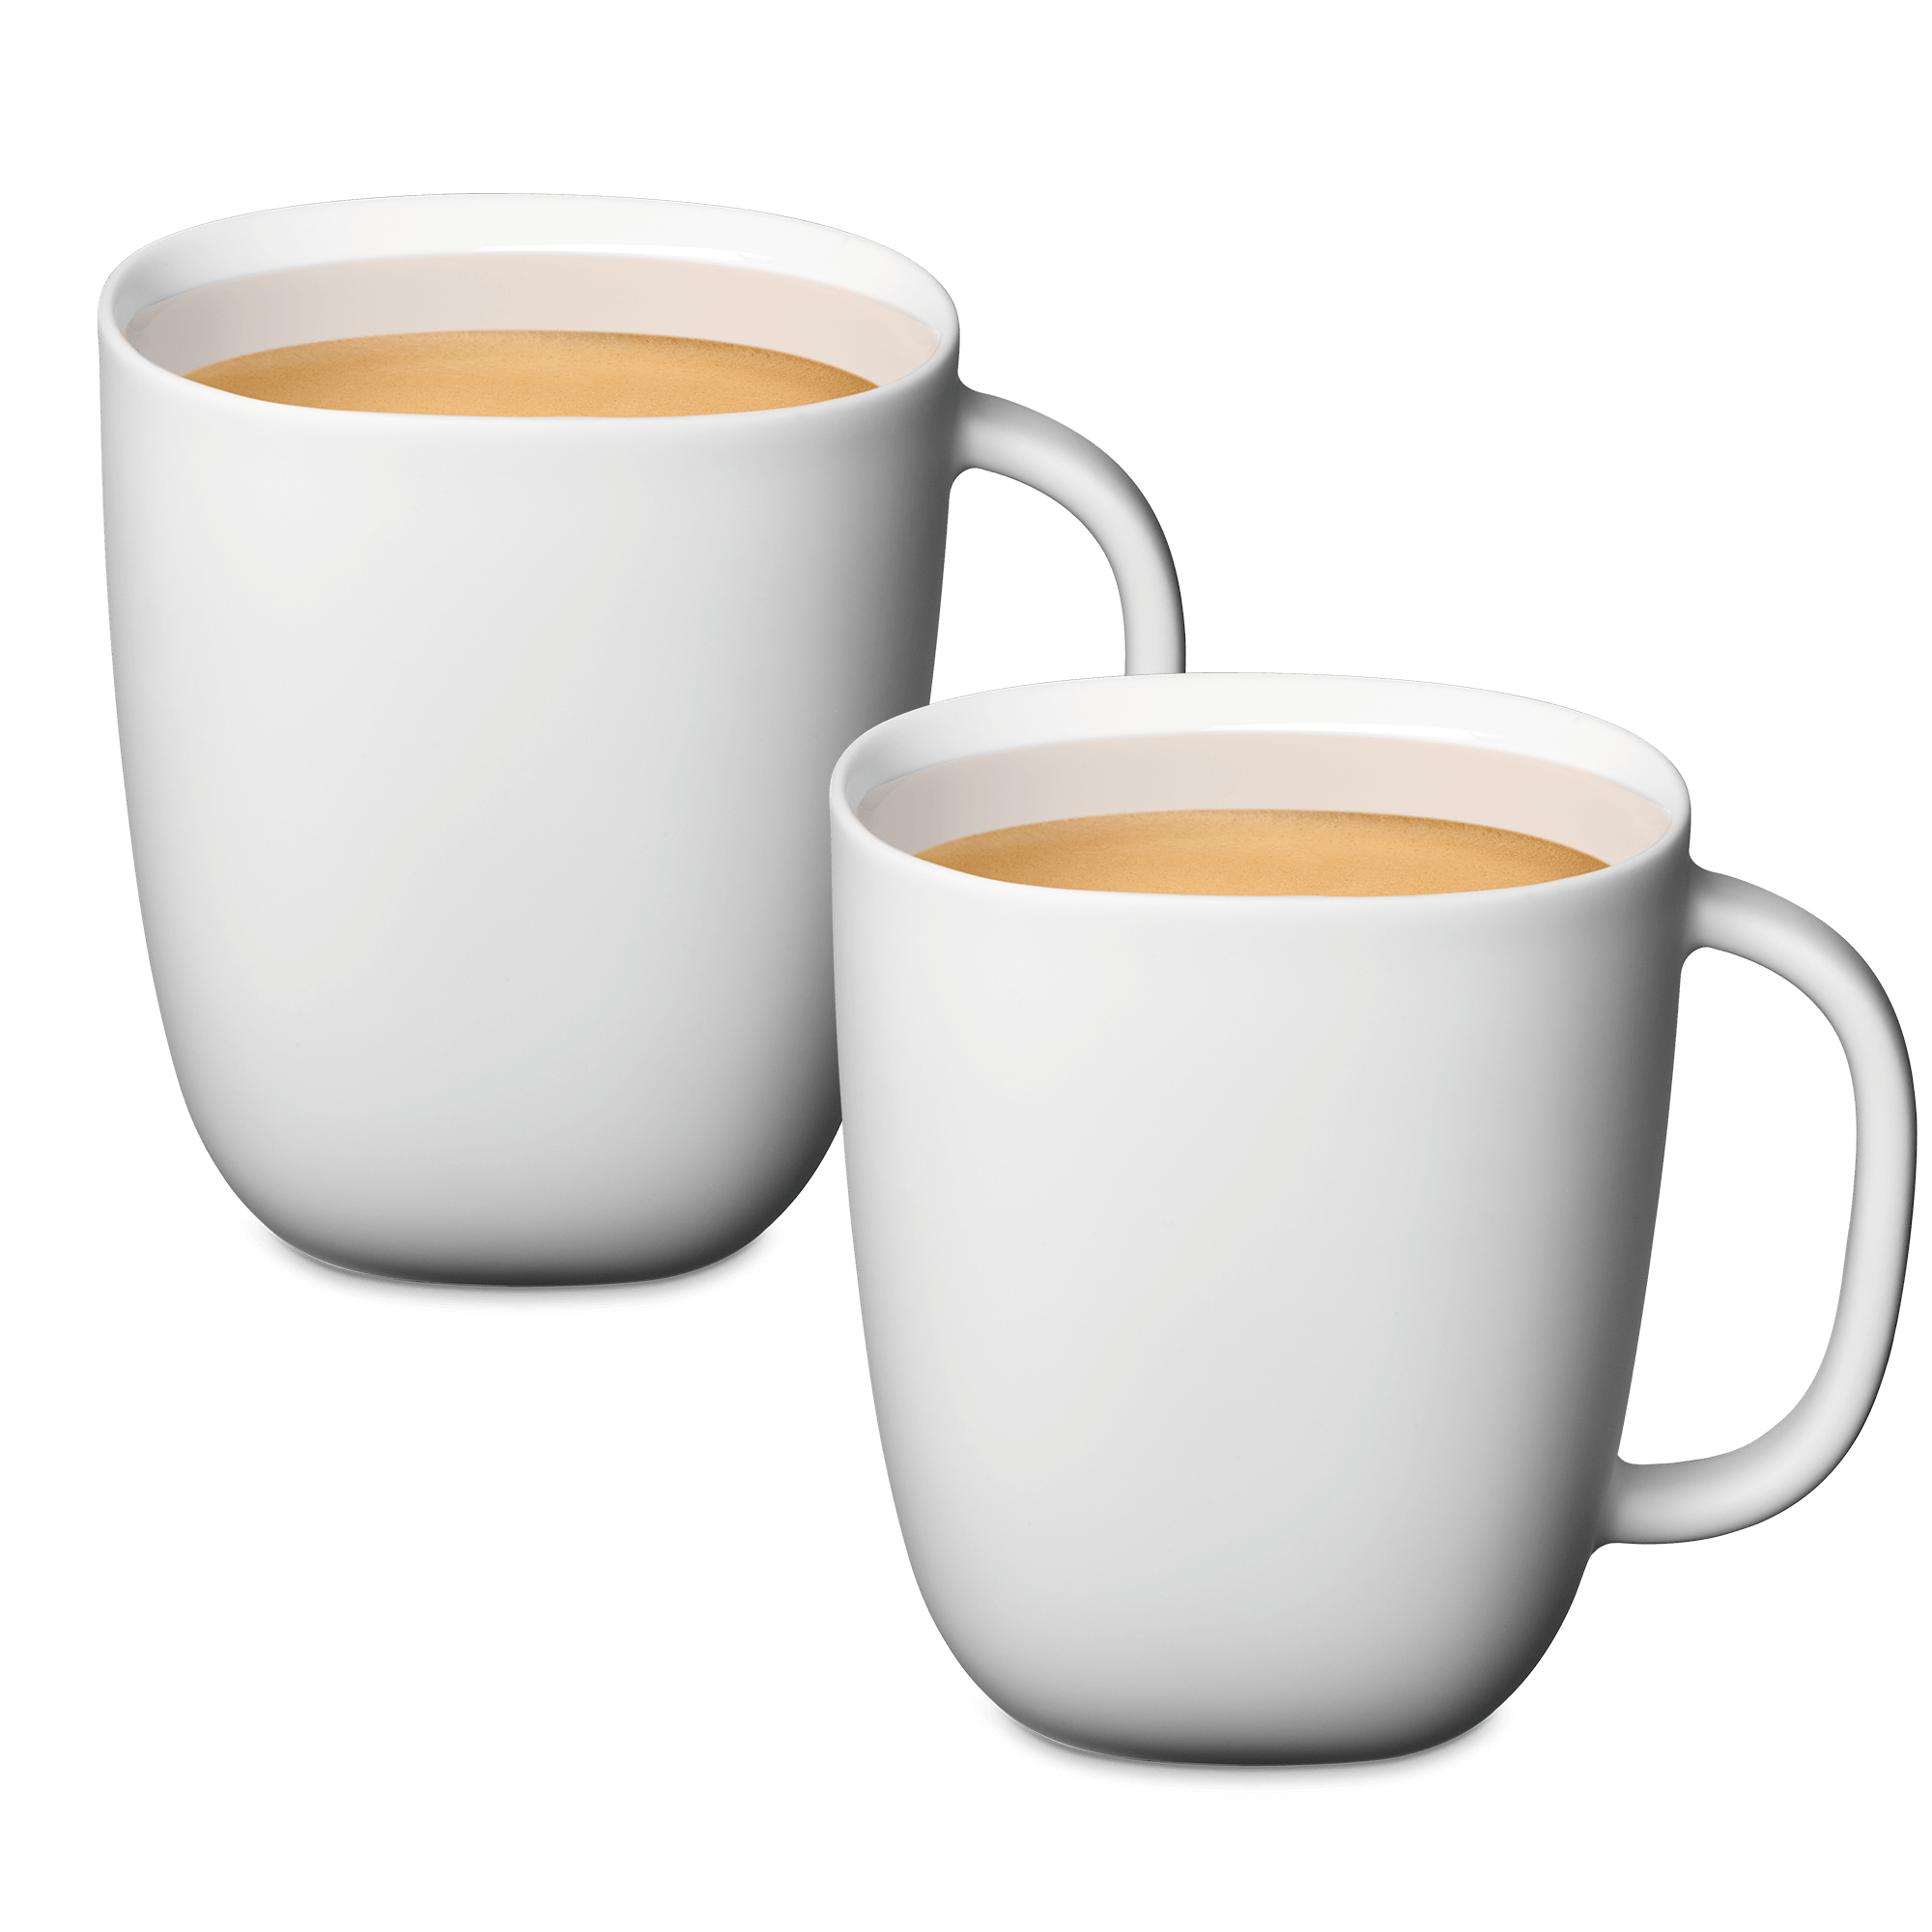 LUME Coffee Mug Tassen (2 x 400 ml) Die Lume Kollektion ist ein zeitgenössischer Klassiker und verleiht der italienischen Eleganz einen modernen Glanz. Set Kaffeetassen (ca. 400 ml) aus mattweißem Porzellan. für 25 EUR